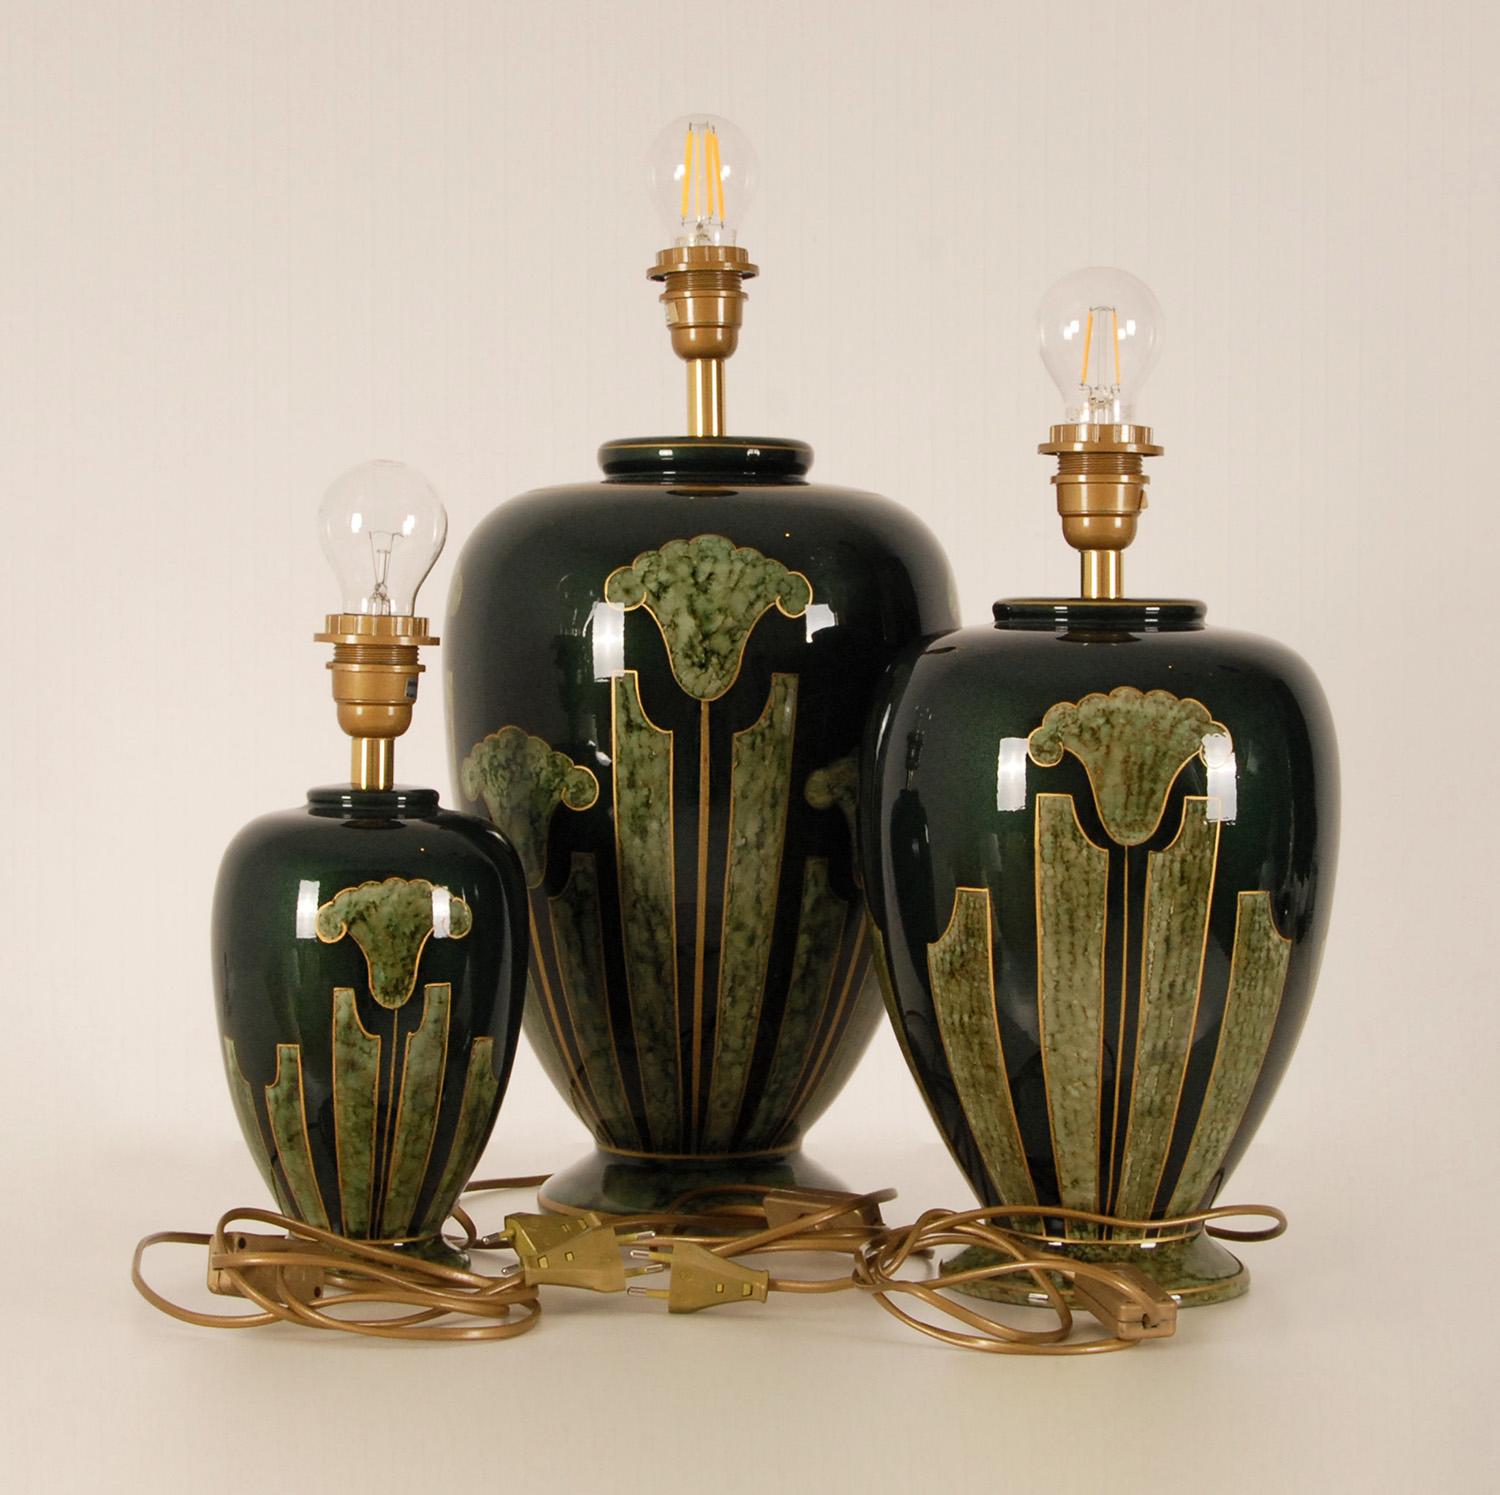 Vintage Französisch Keramik Tischlampen - hohe klassische Vase Lampen mit faux Marmor
Satz von 3 Tischlampen
MATERIAL: Porzellan - Keramik
Design/One : Französischer Louis Drimmer (signiert)
Produzent: Louis Drimmer, nach dem Vorbild von